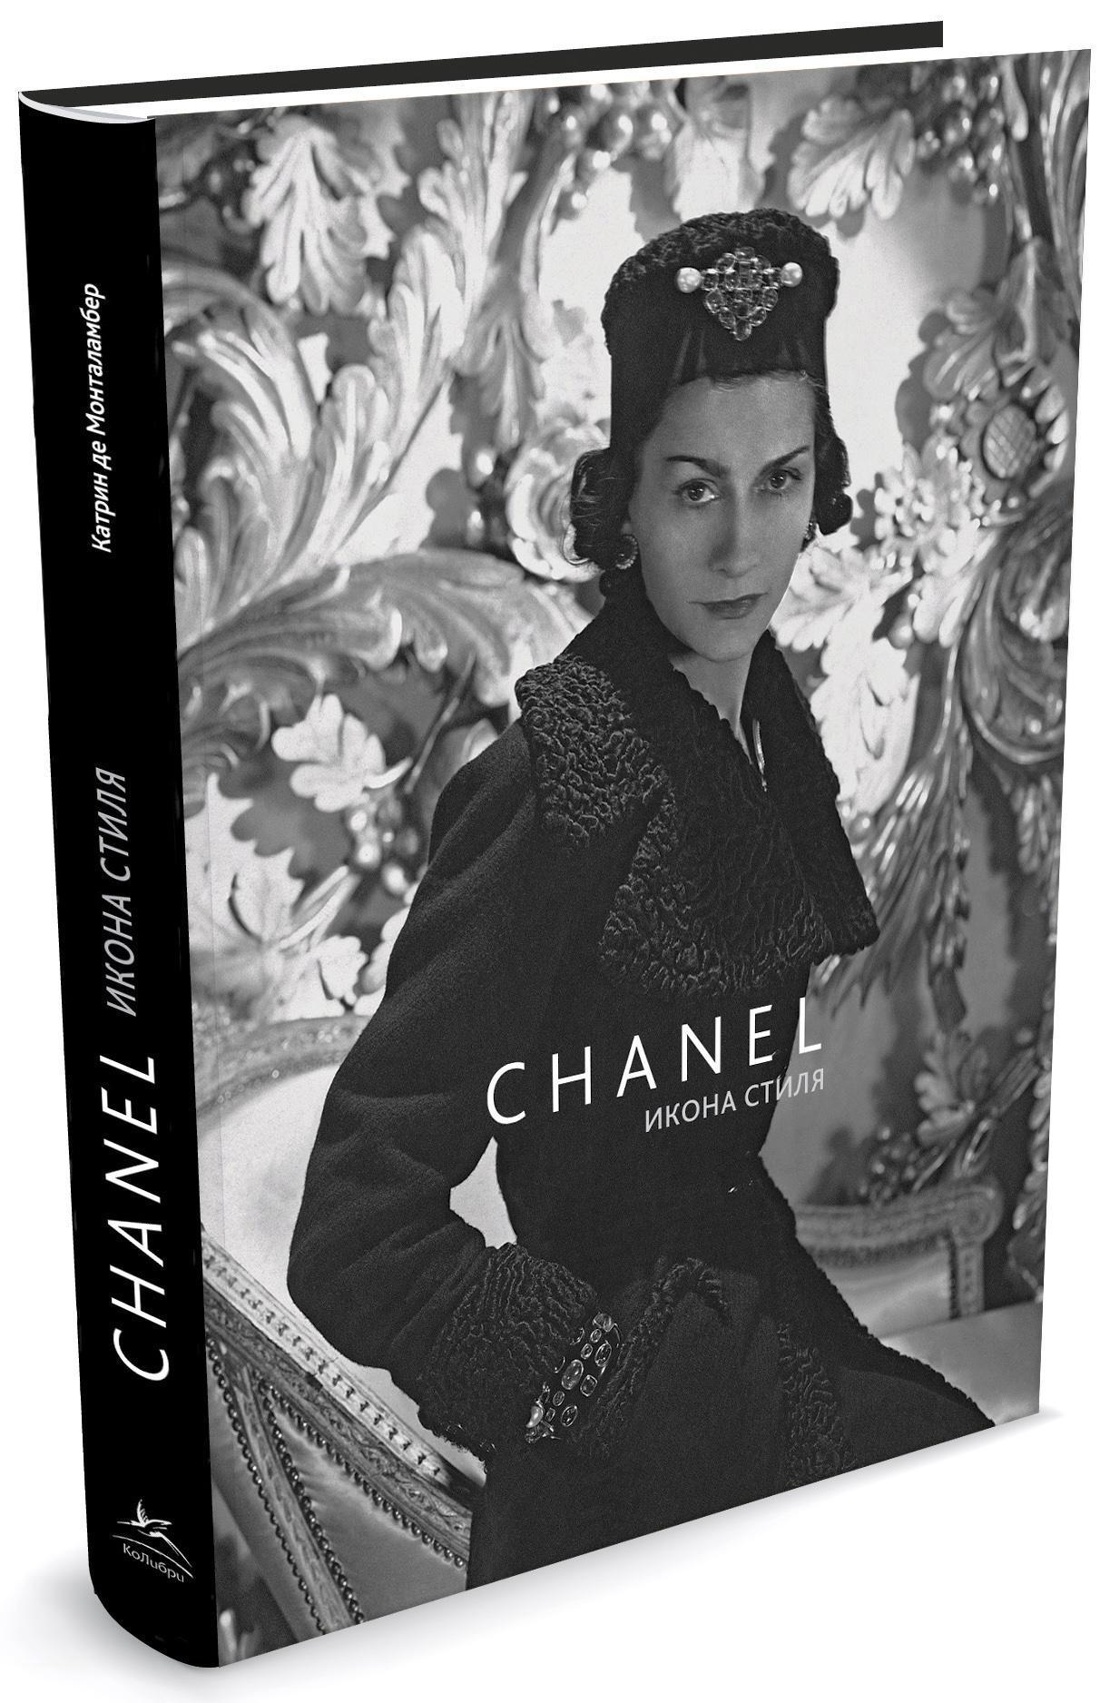 Chanel. Икона стиля